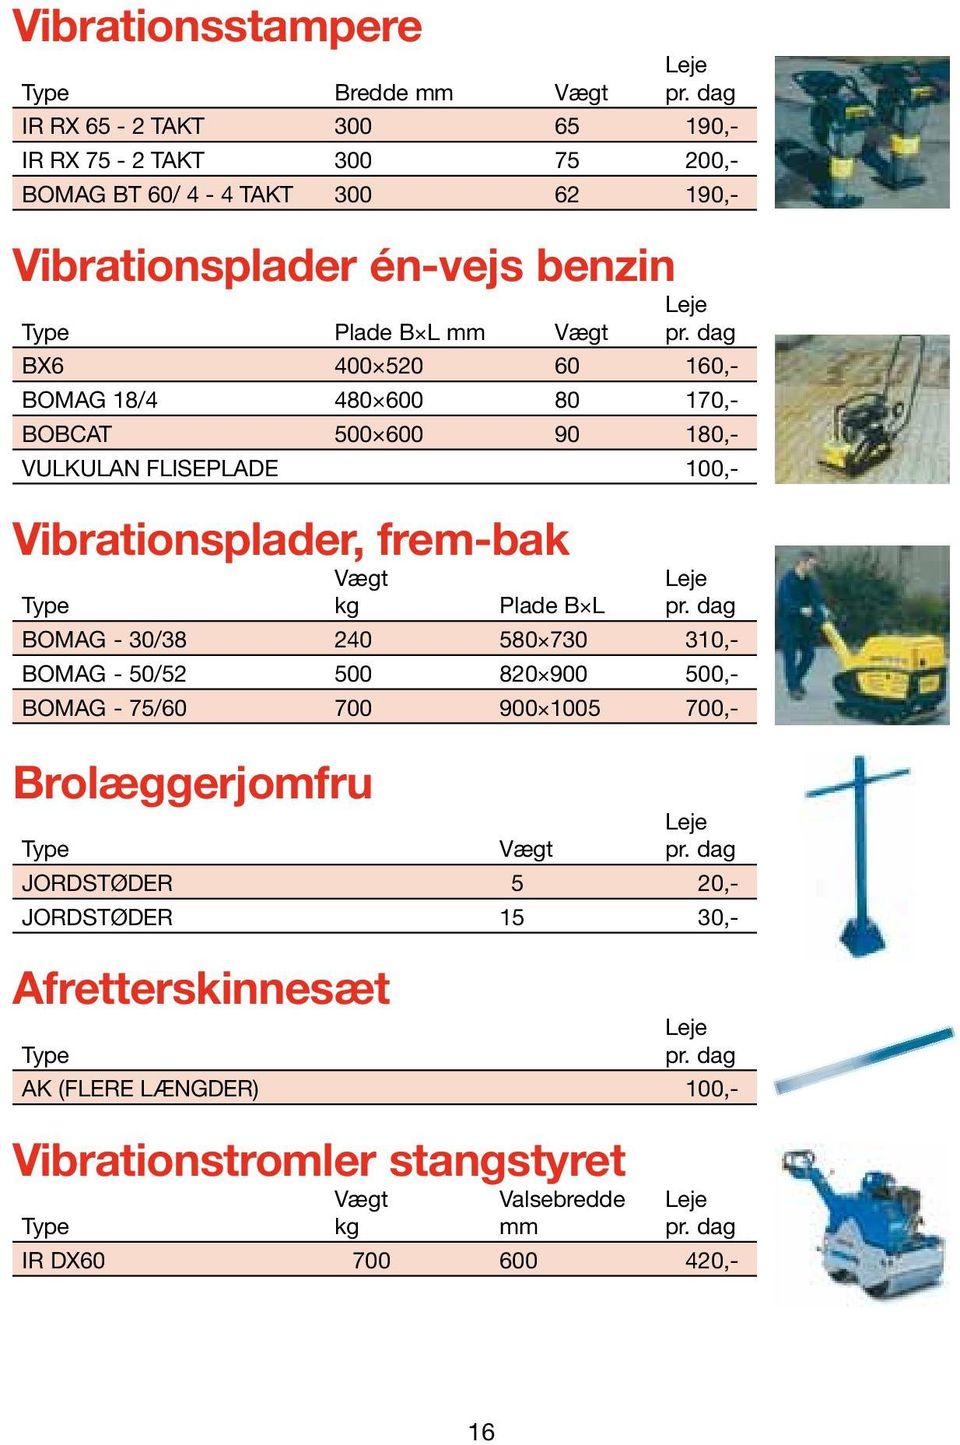 Vibrationsplader, frem-bak Vægt kg Plade B L Bomag - 30/38 240 580 730 310,- Bomag - 50/52 500 820 900 500,- Bomag - 75/60 700 900 1005 700,-